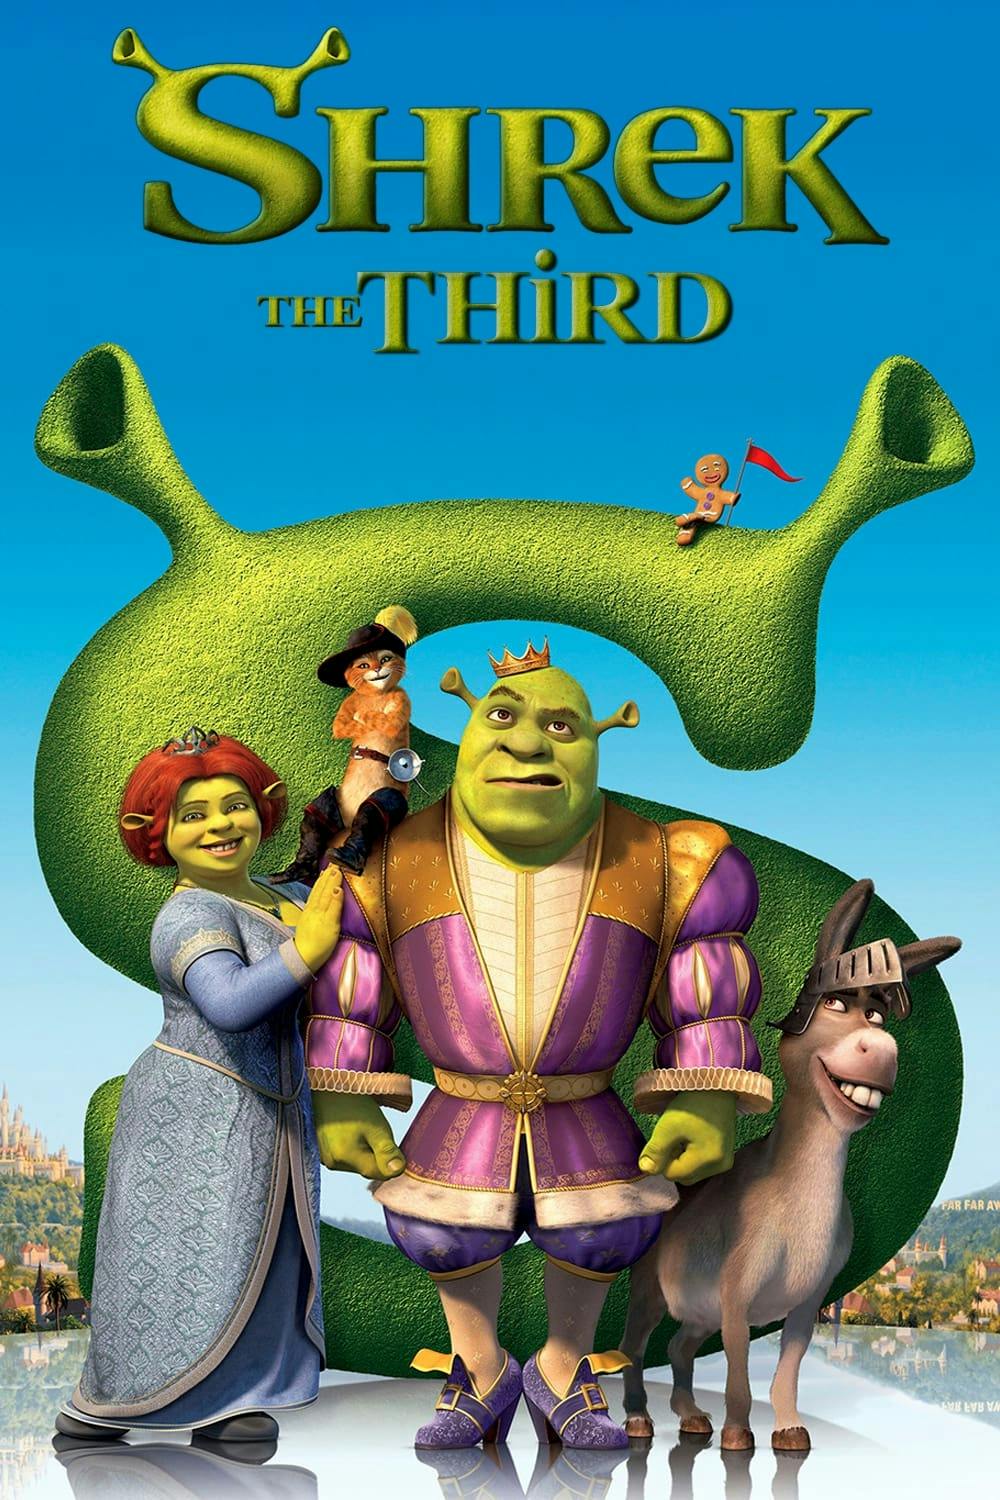 Poster de Shrek le troisième